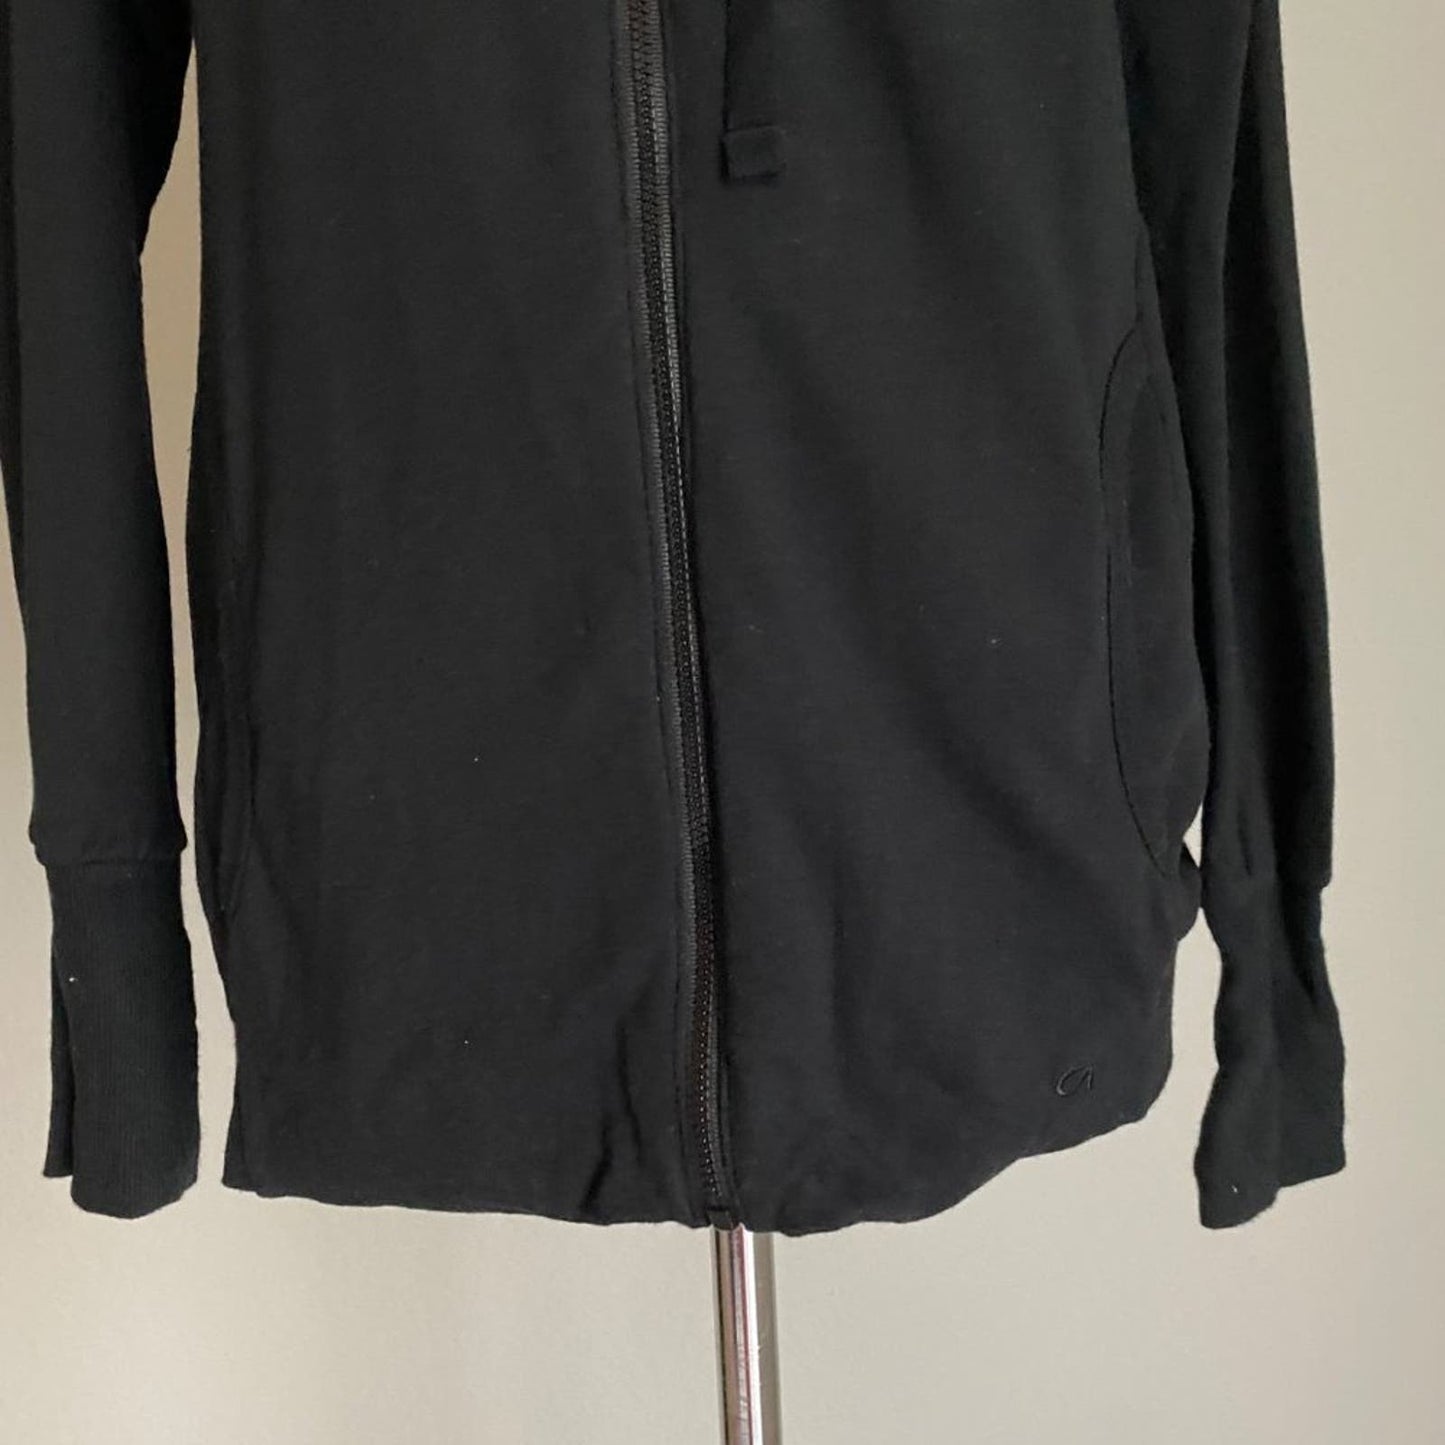 Gap sz S black cotton zip warm sweatshirt